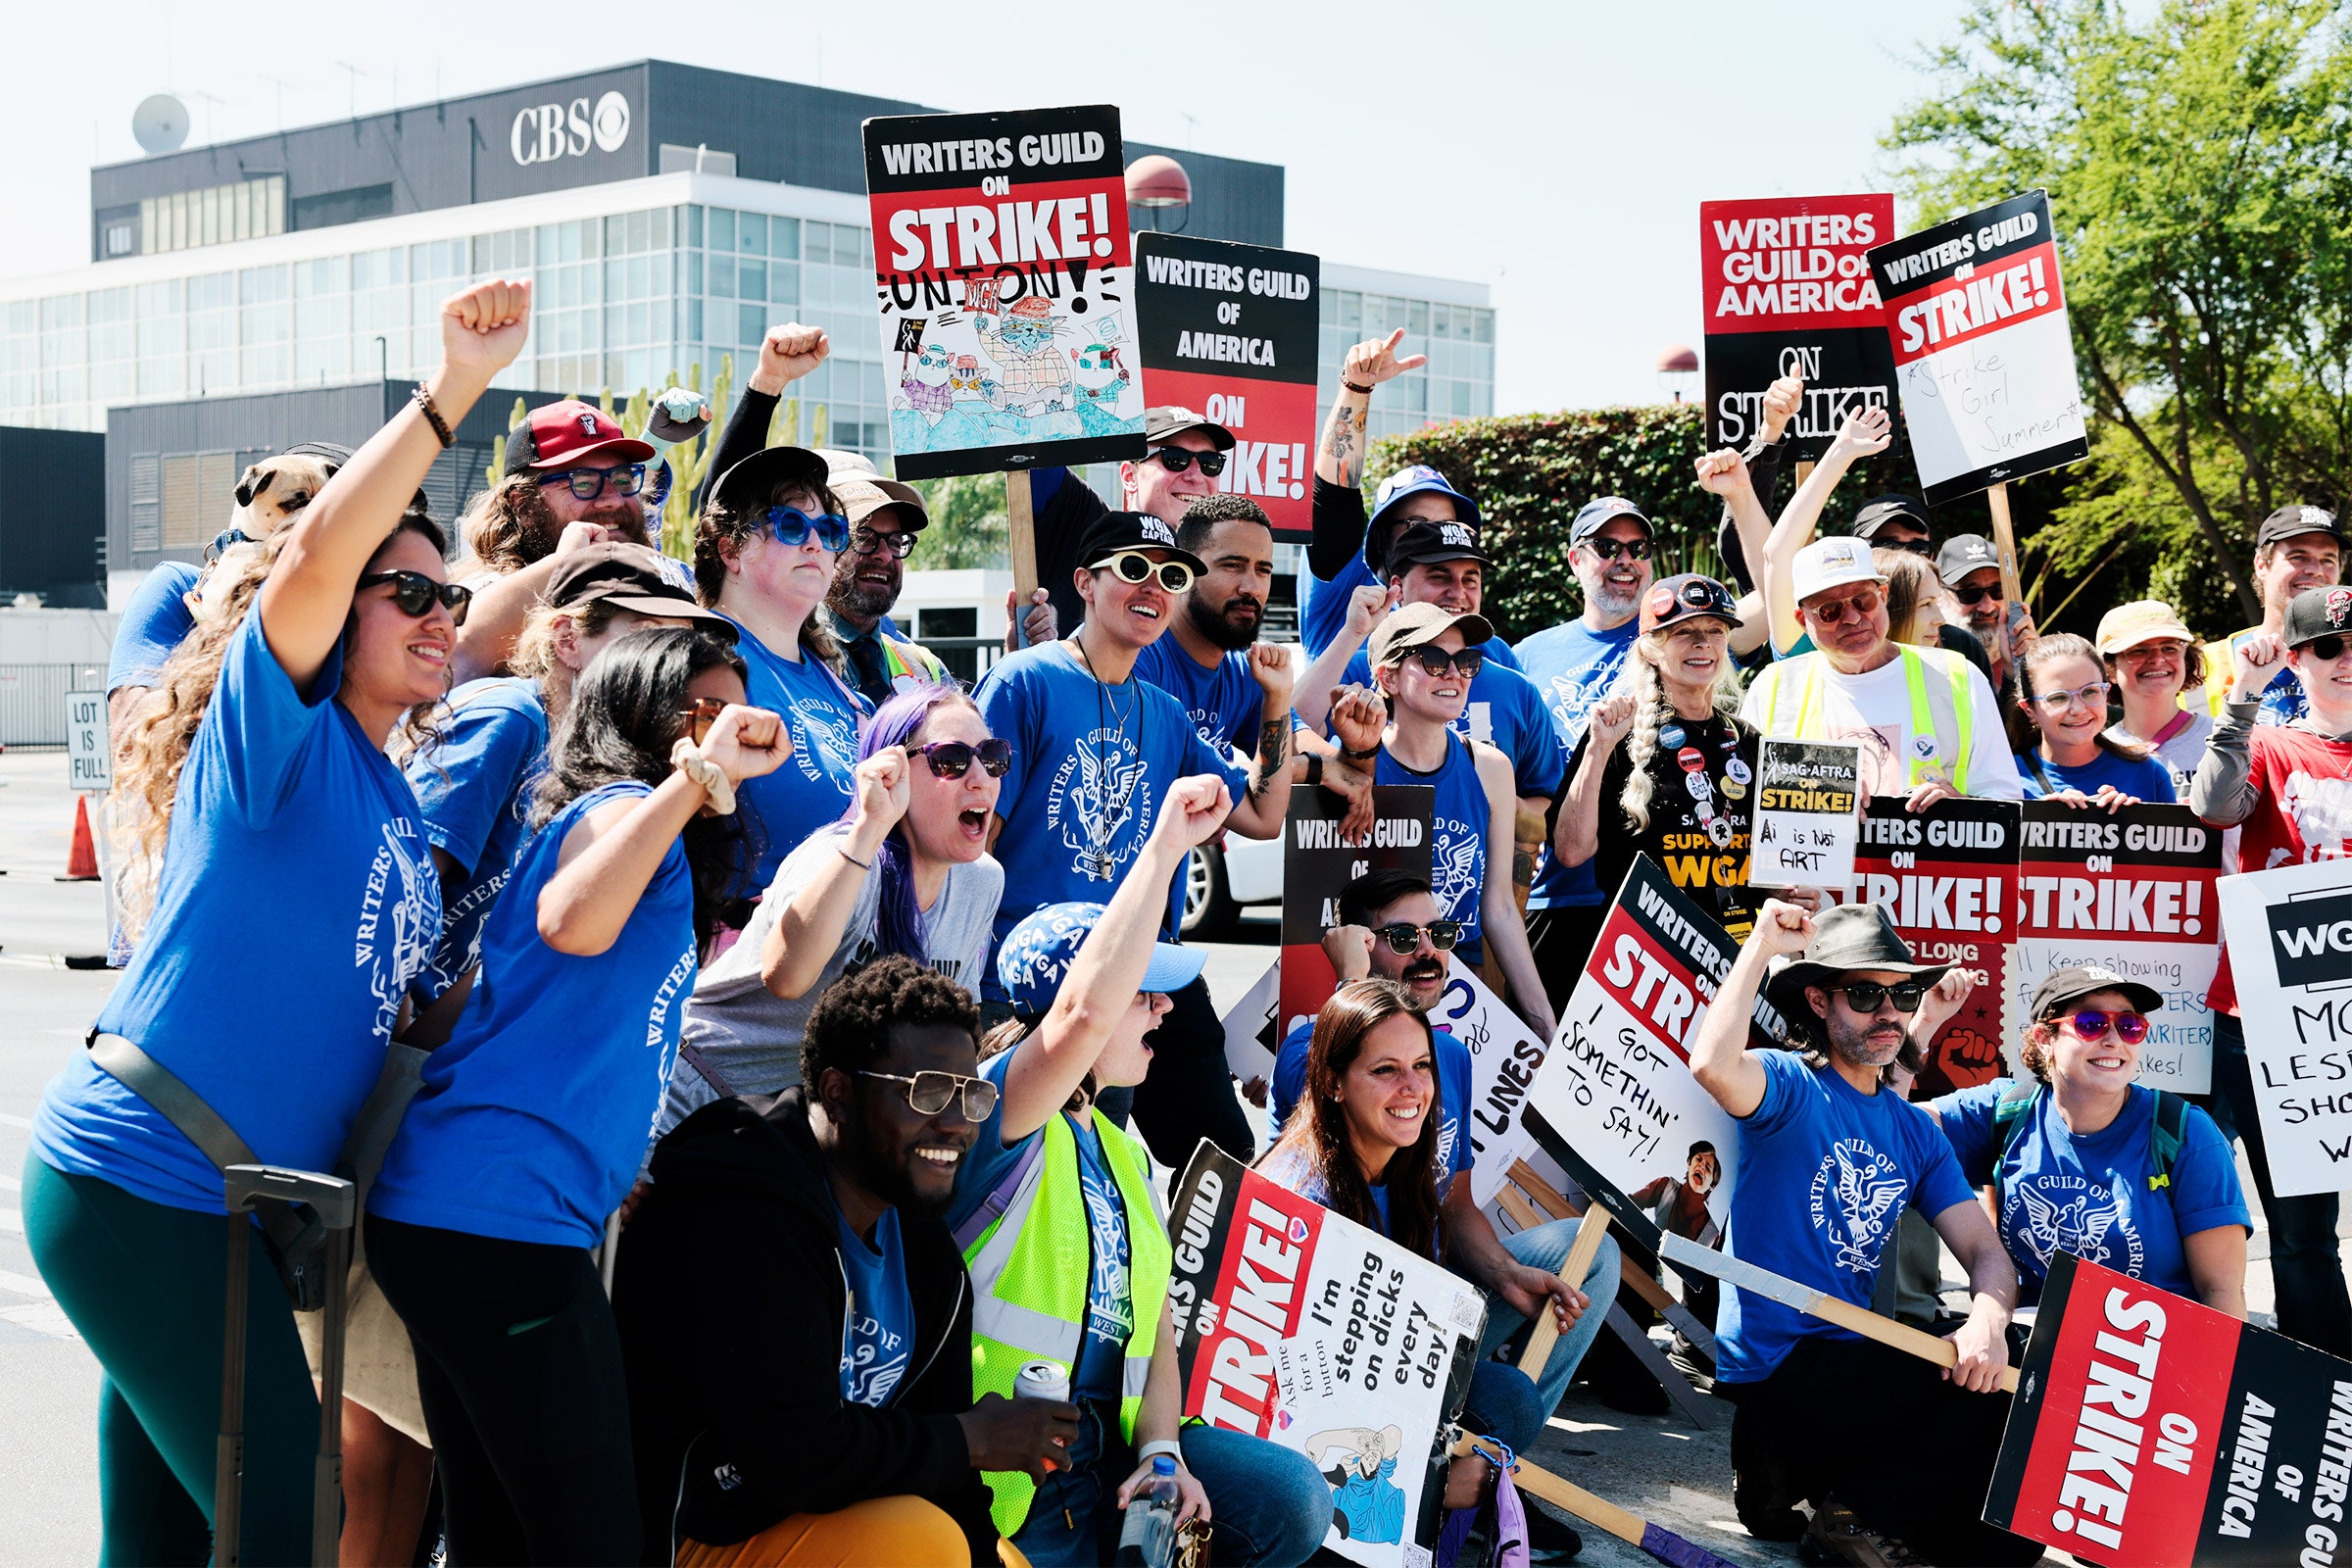 Os membros da WGA se alegram durante uma greve em frente ao estúdio da CBS